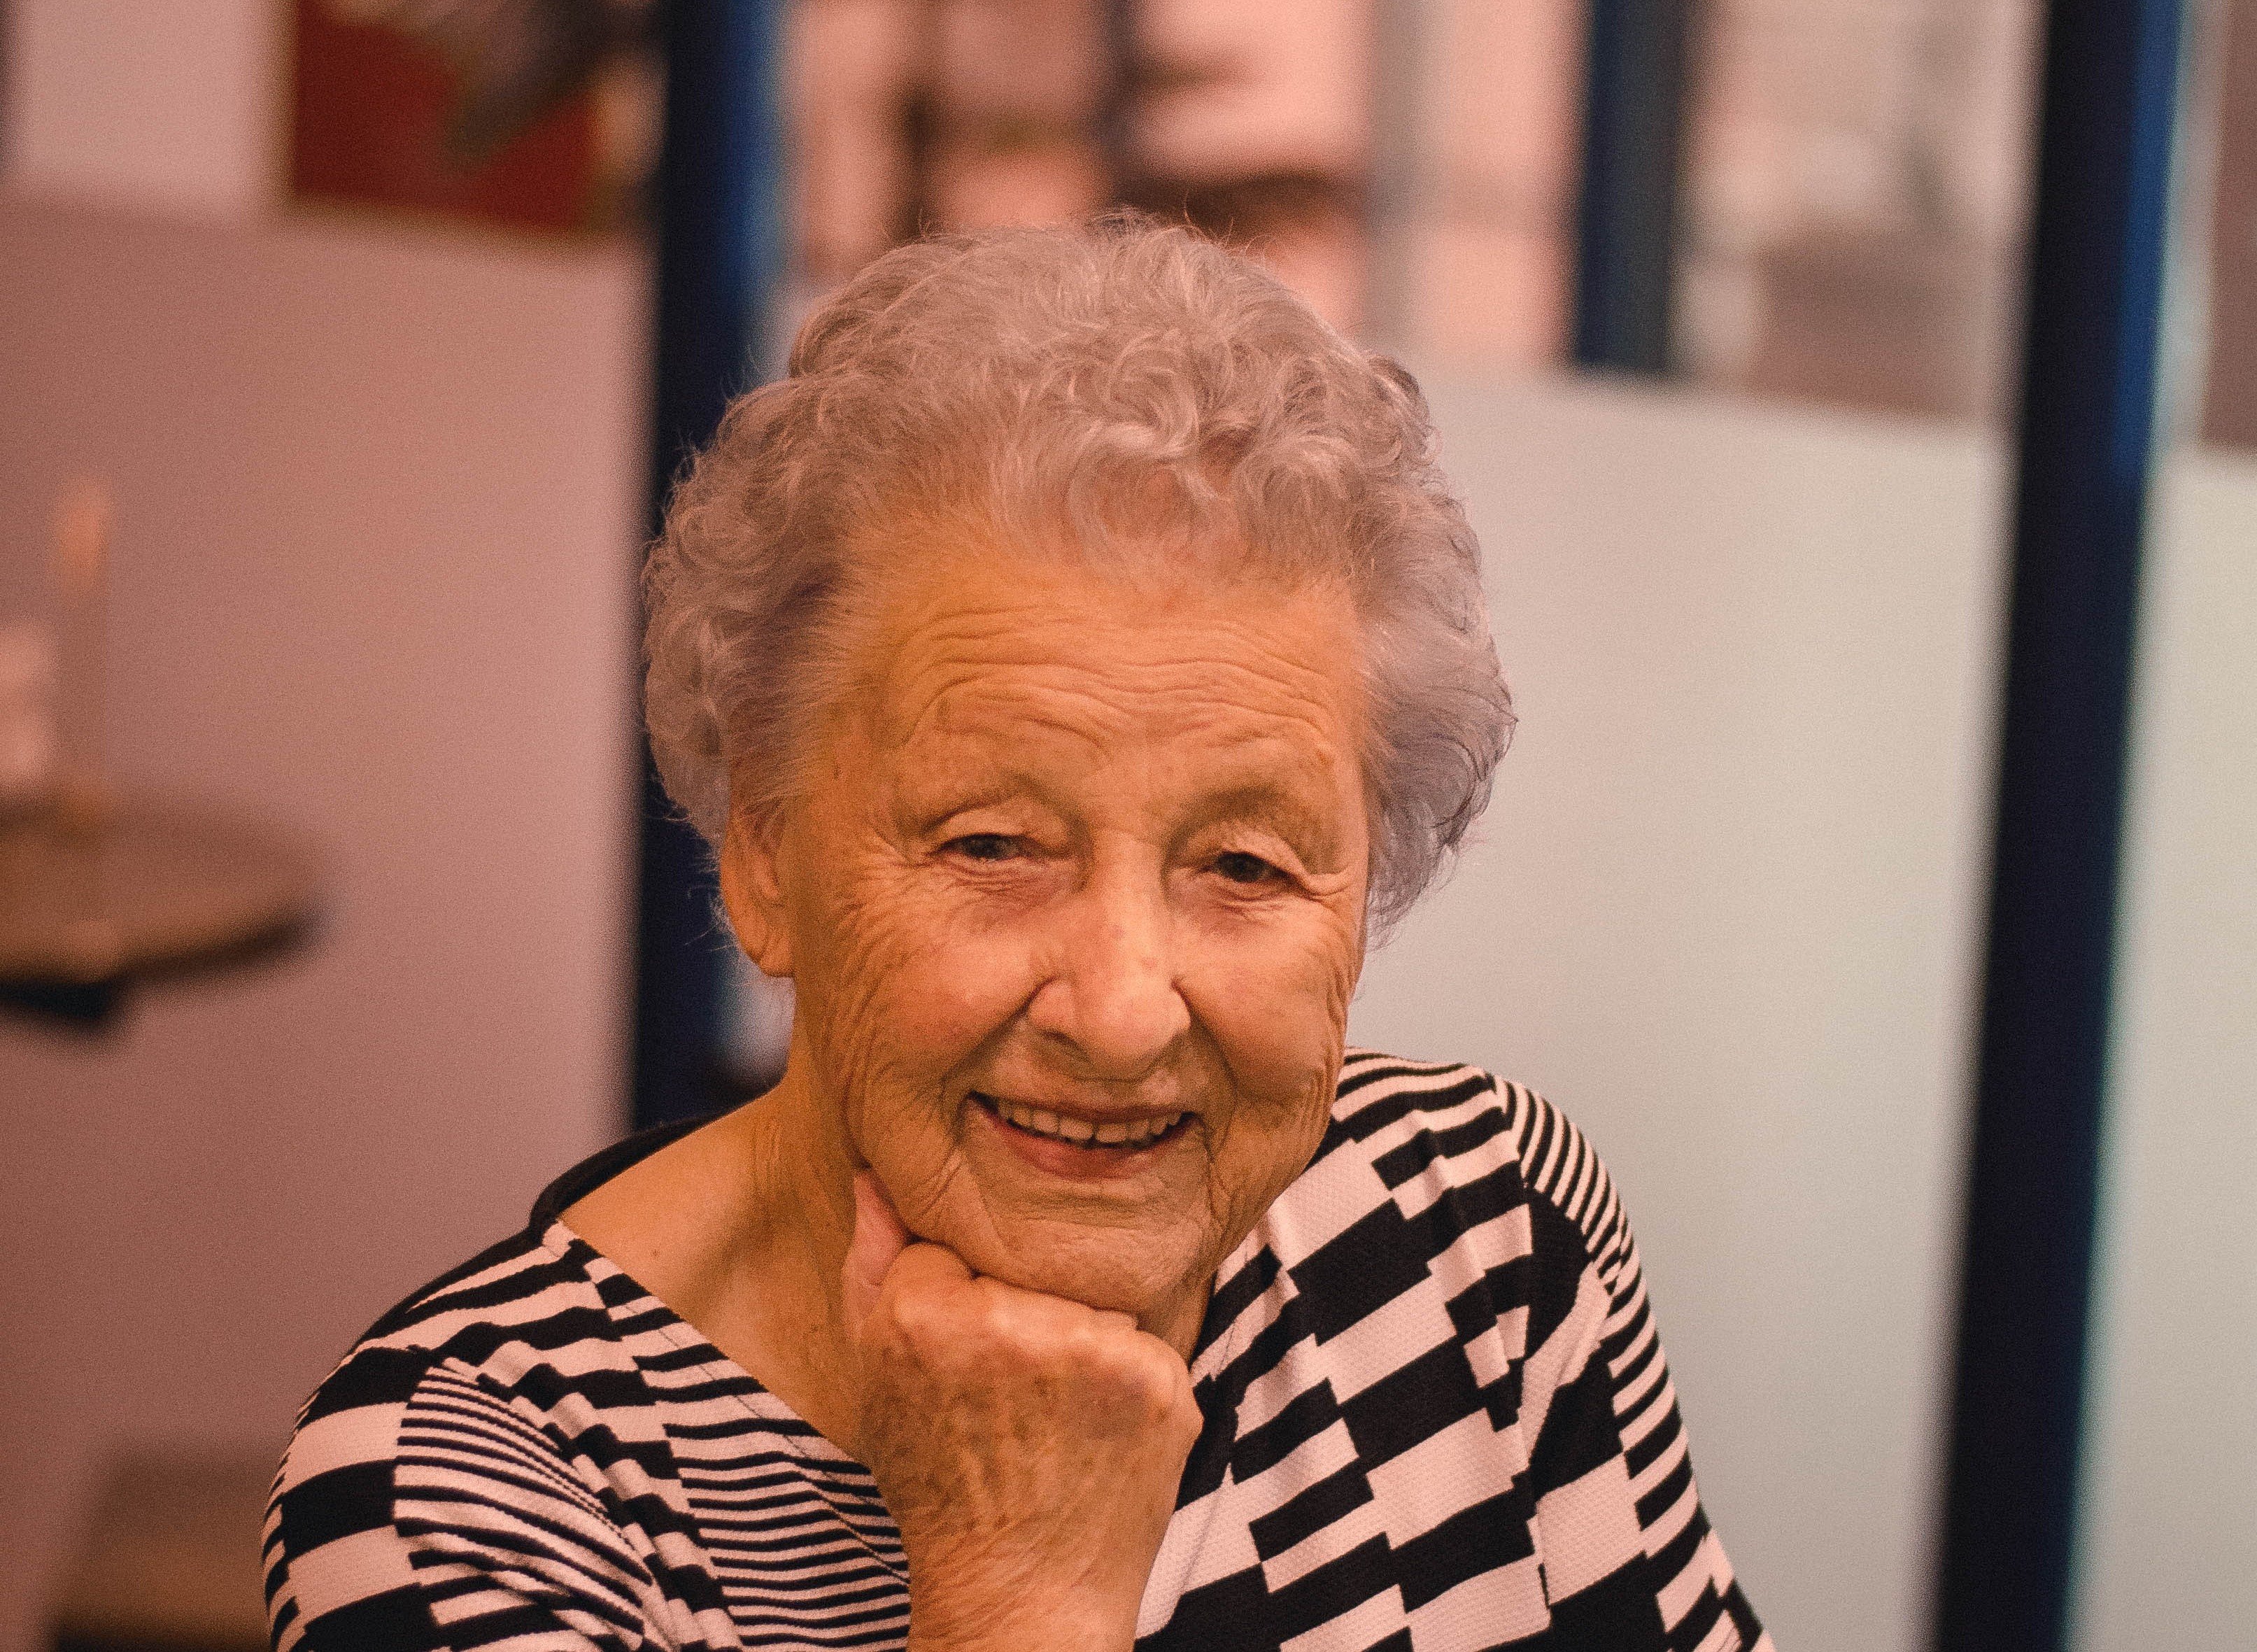 La vieille dame sourit joyeusement en voyant l'OP. | Photo : Pexels